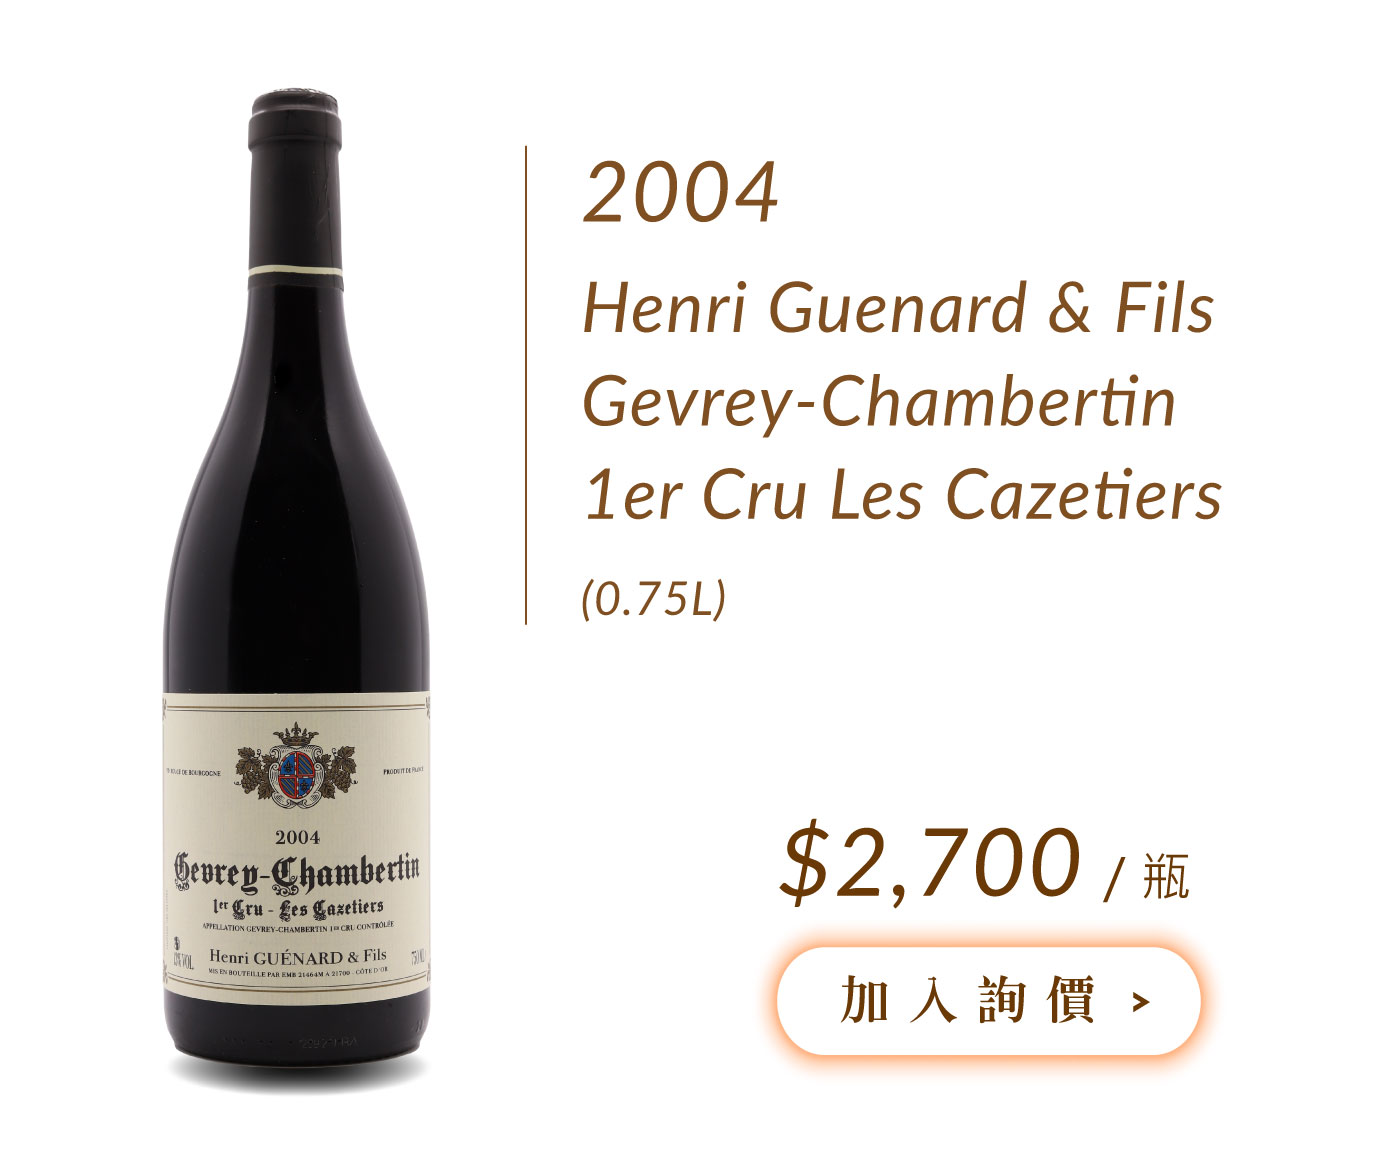 2004 Henri Guenard & Fils Gevrey-Chambertin 1er Cru Les Cazetiers